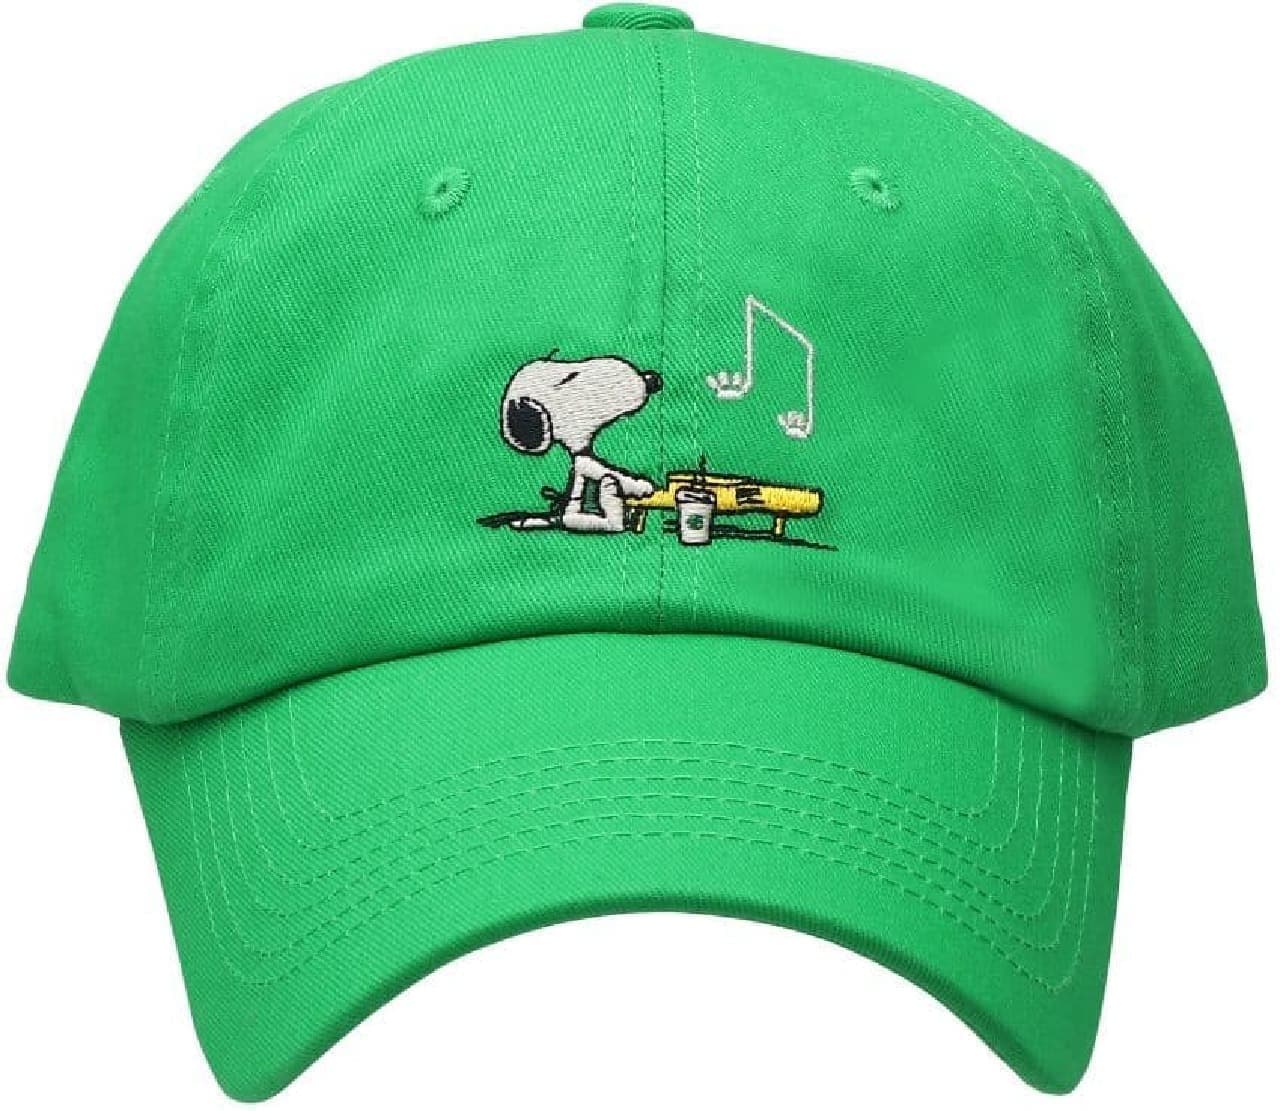 スタバ「ベースボールキャップ グリーン PEANUTS Piano Snoopy」